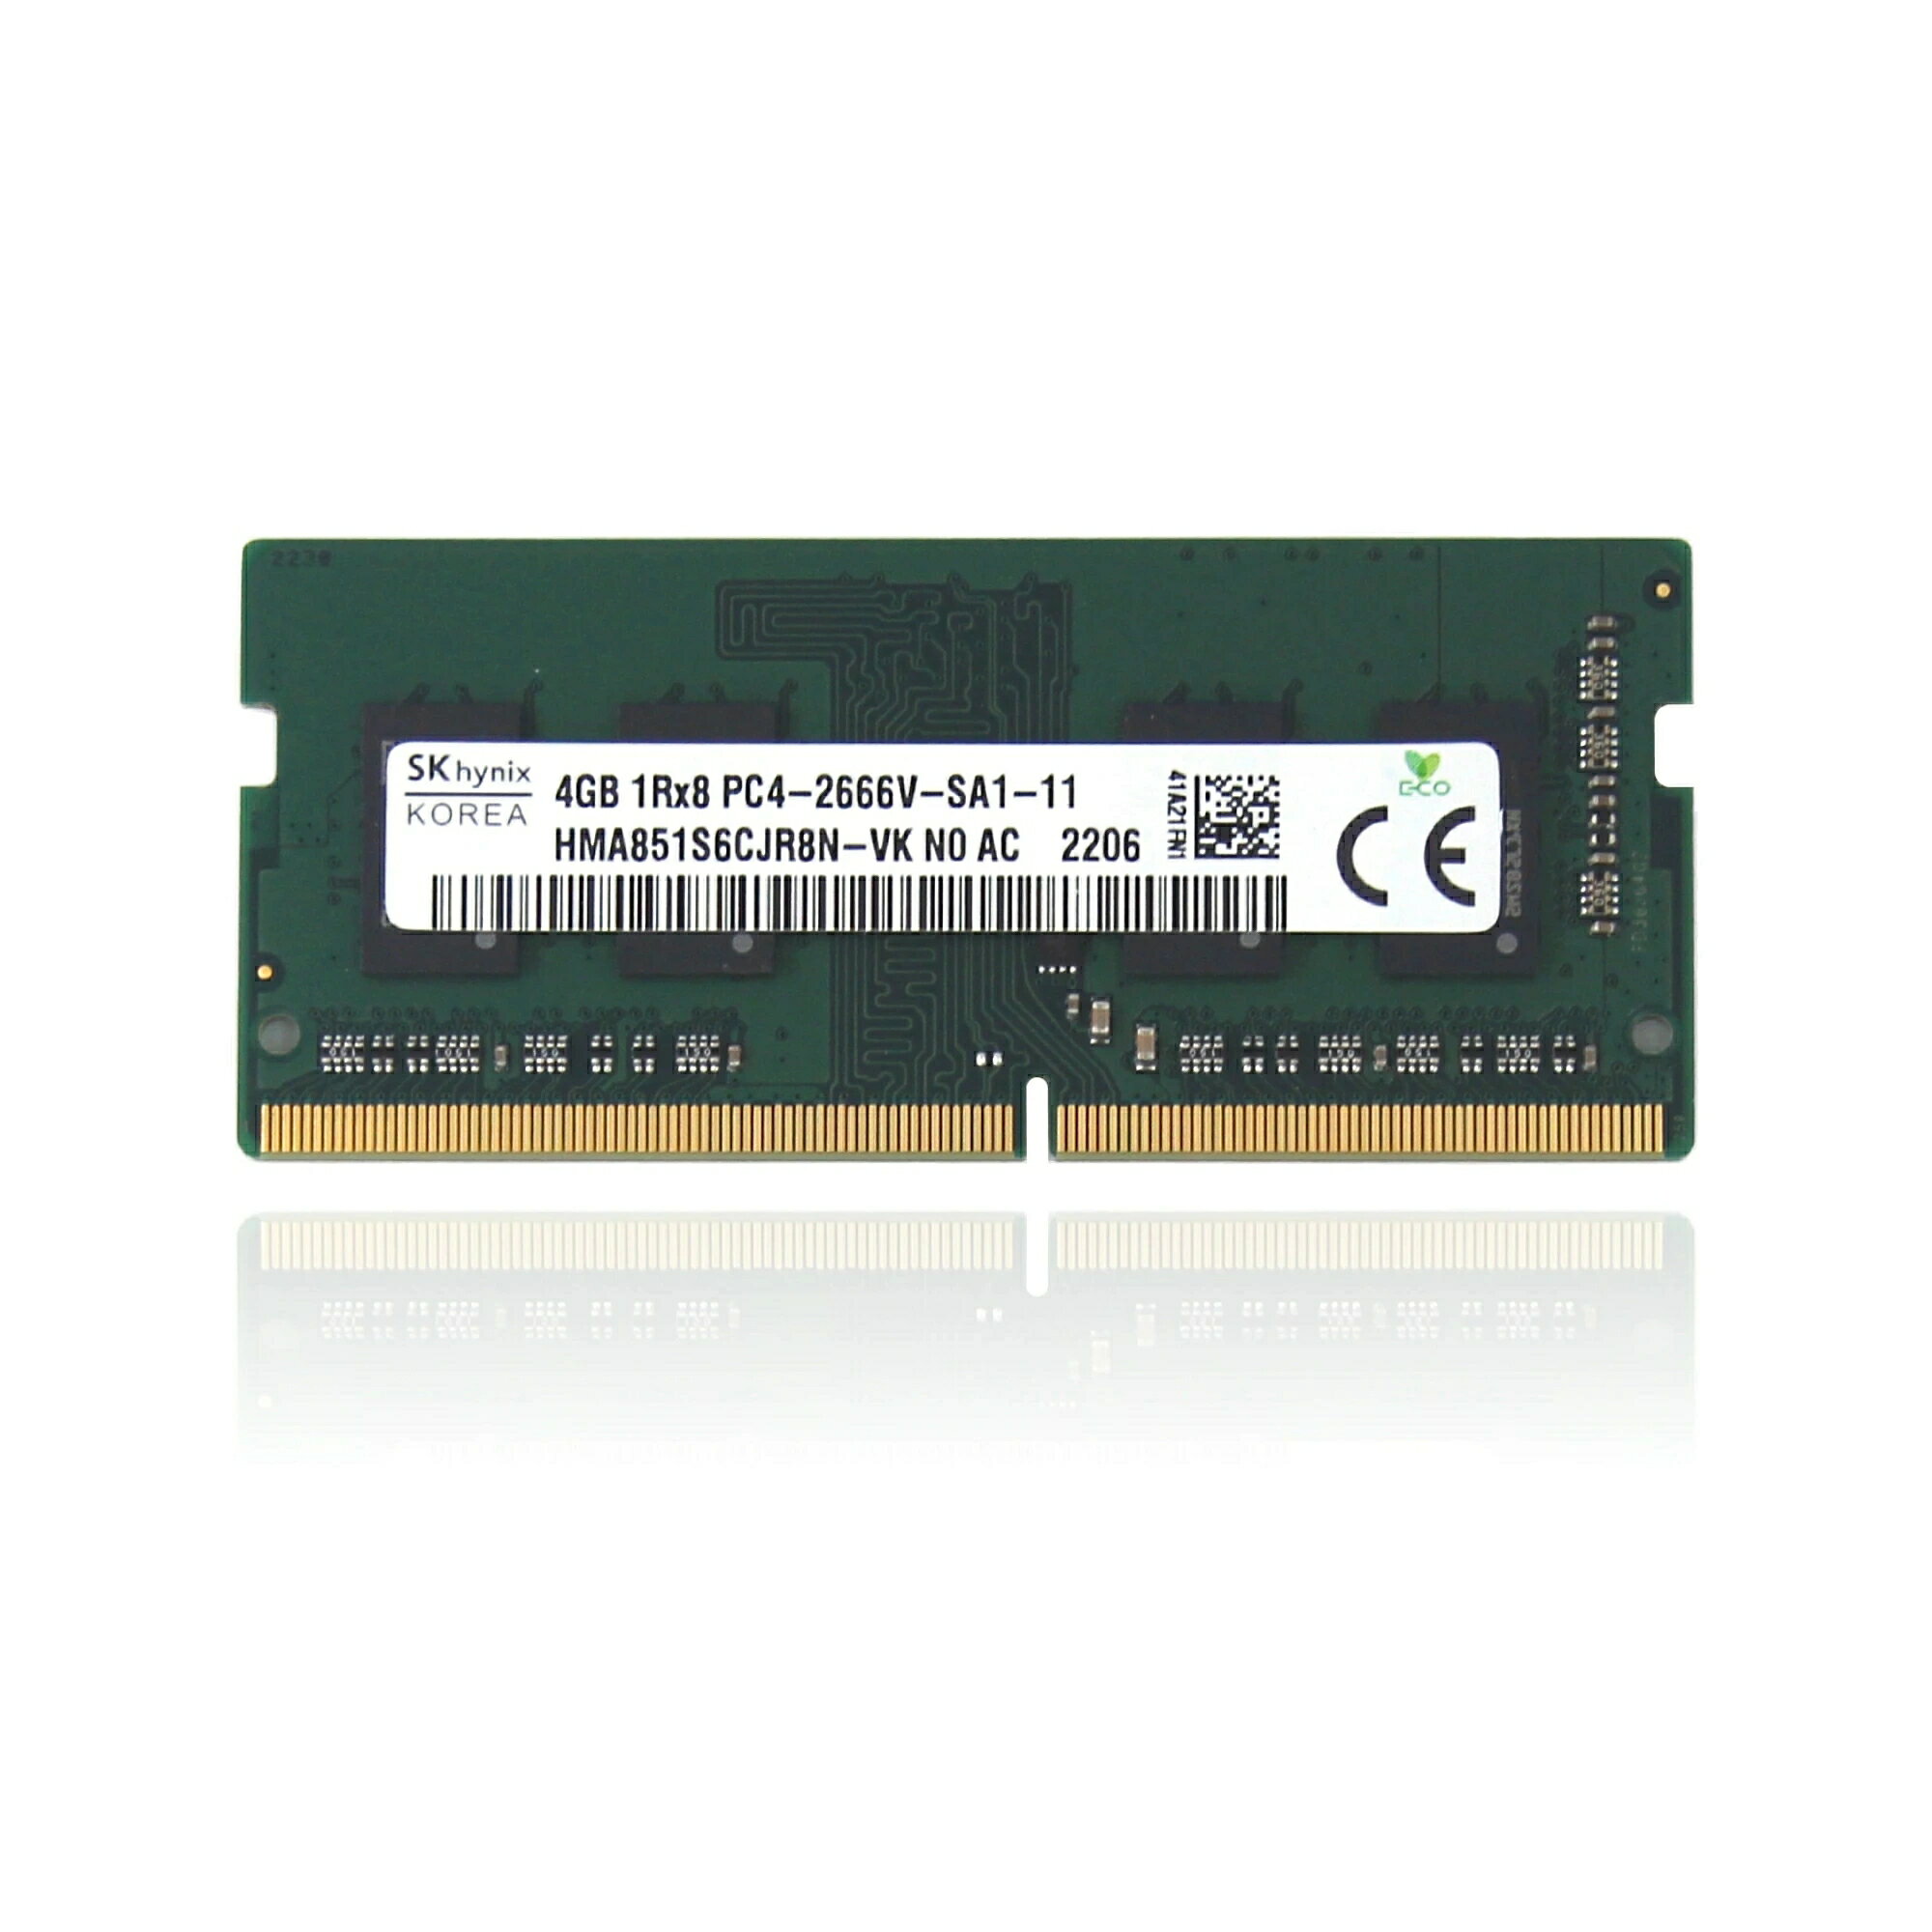 【永久保証・当日発送 全国送料無料】【新品】SK hynix HMA851S6CJR8N - VK 非ECC 4GB PC4-2666V DDR4 at 2666MHz 260ピン SDRAM SODIMM シングル キット ラップトップ メモリ - OEM 4GB純正 メモリー増設